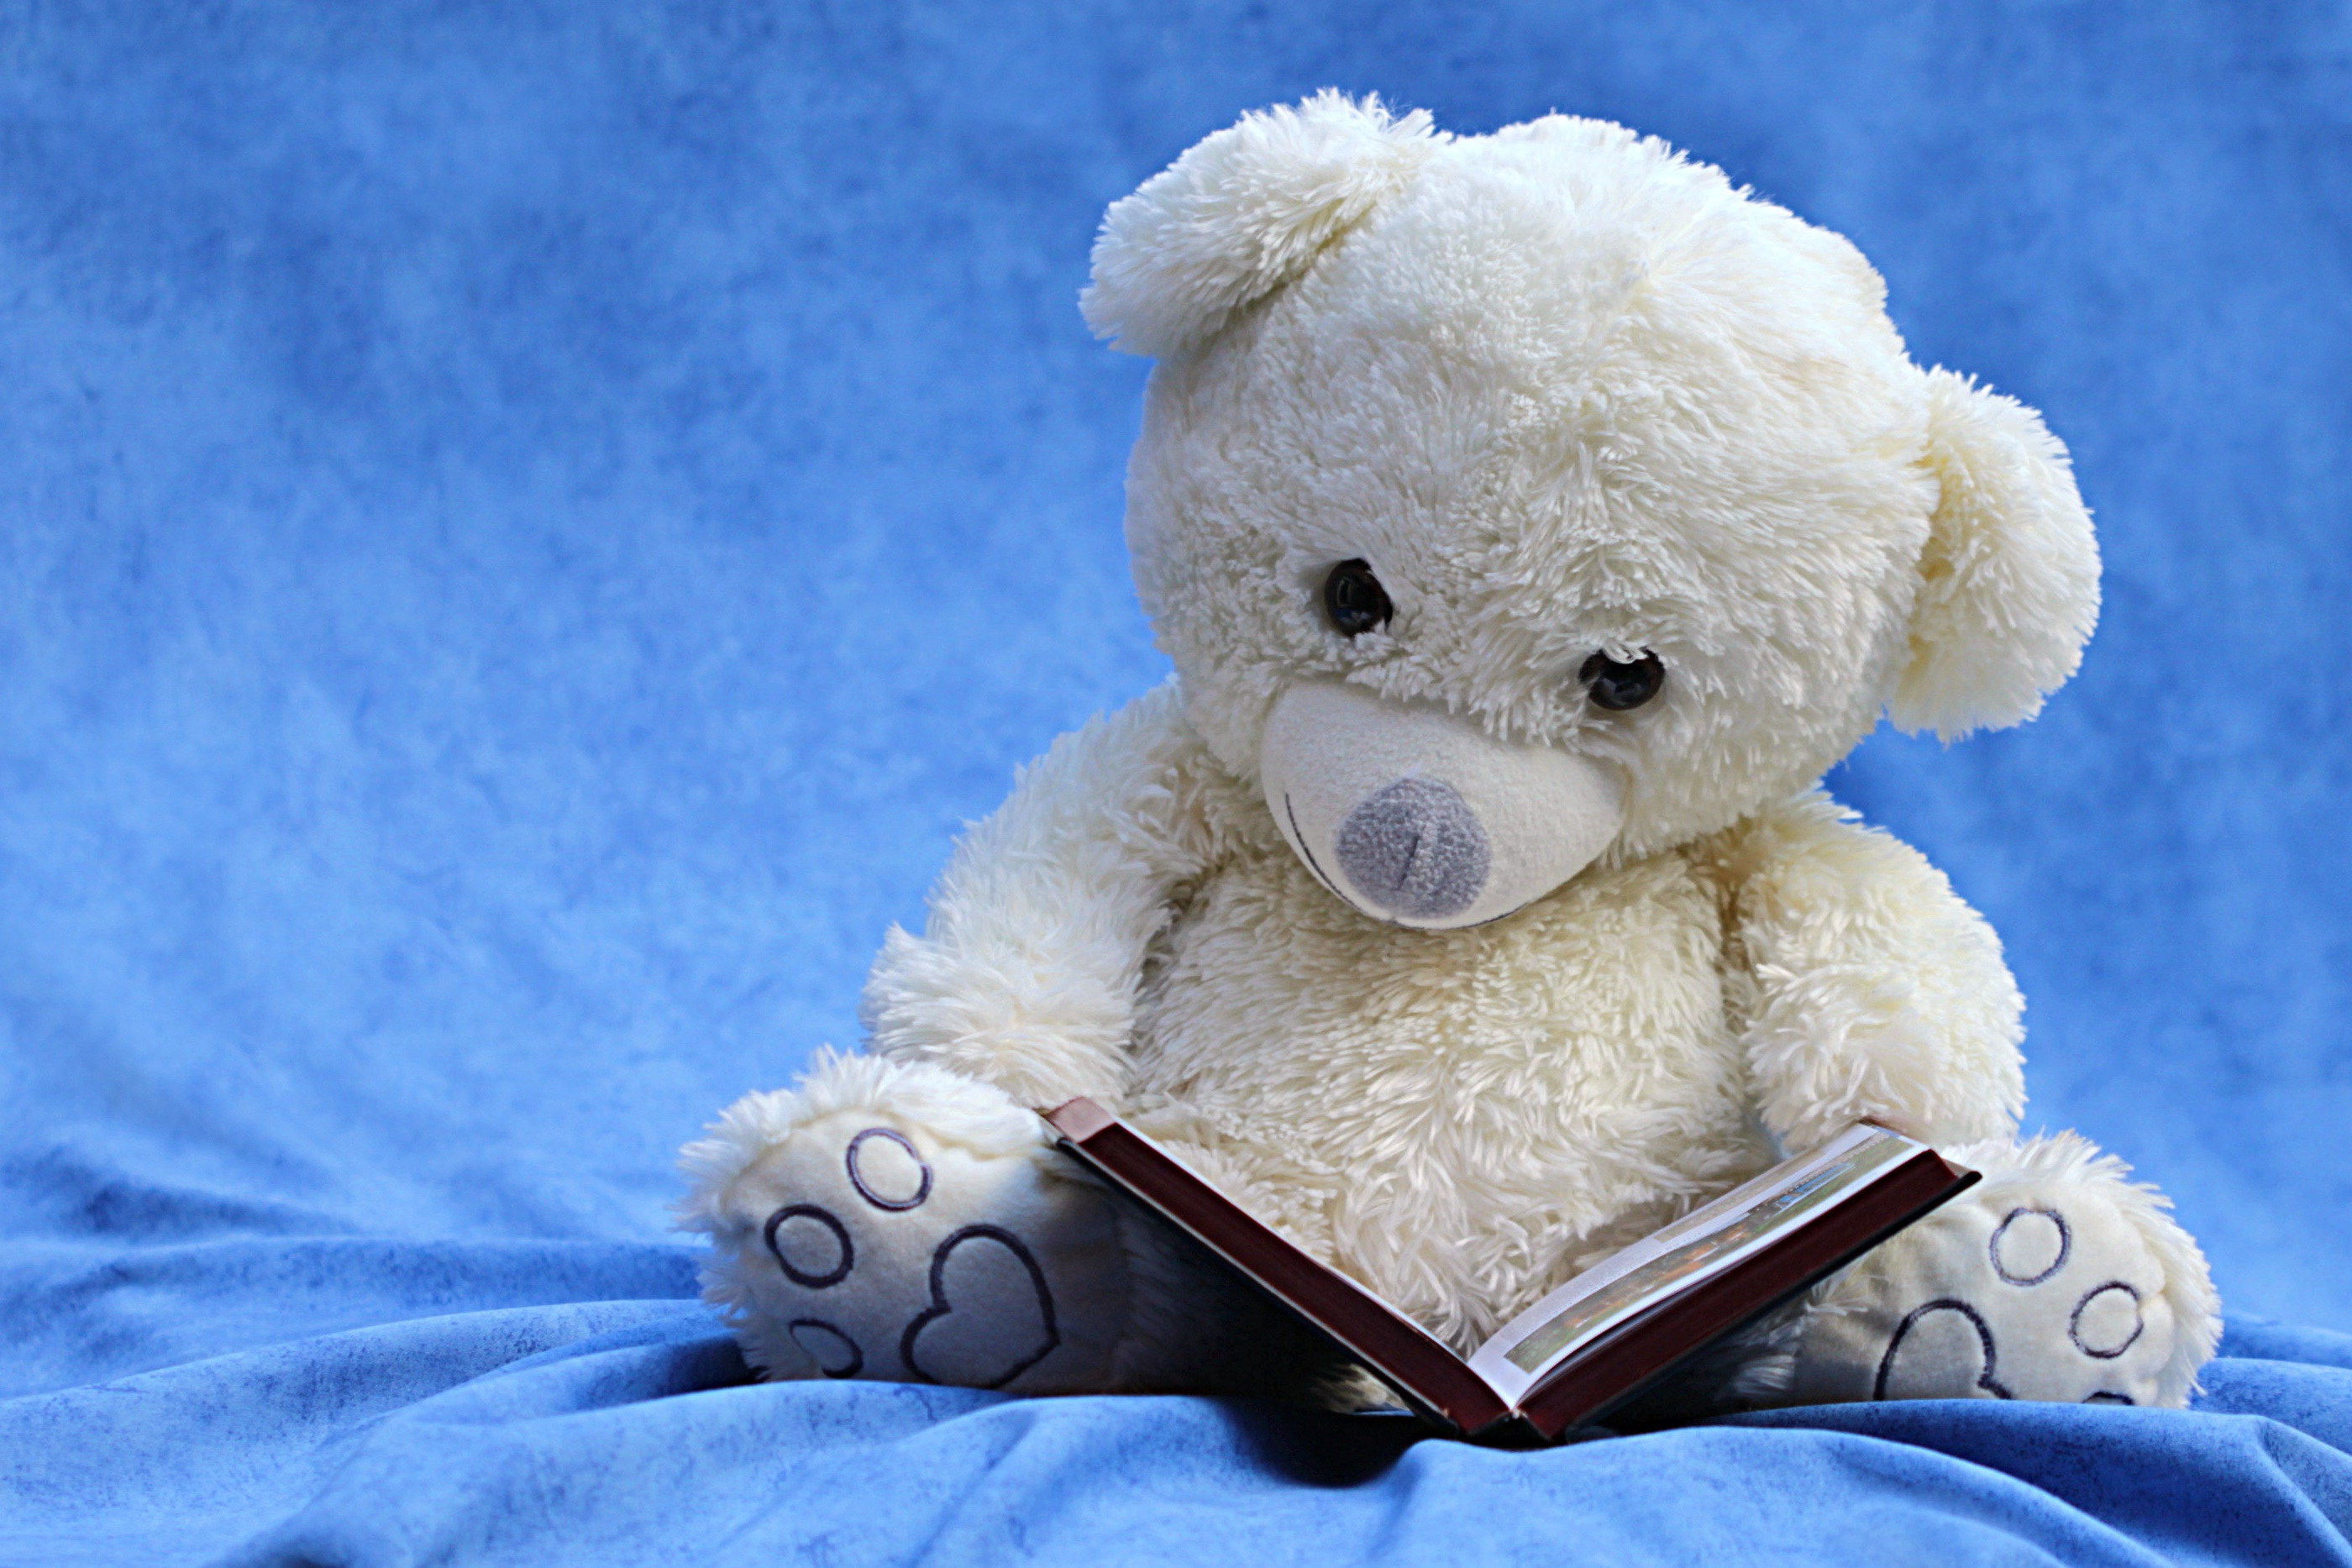 Gấu Dễ Thương Teddy Bản  Miễn Phí vector hình ảnh trên Pixabay  Pixabay